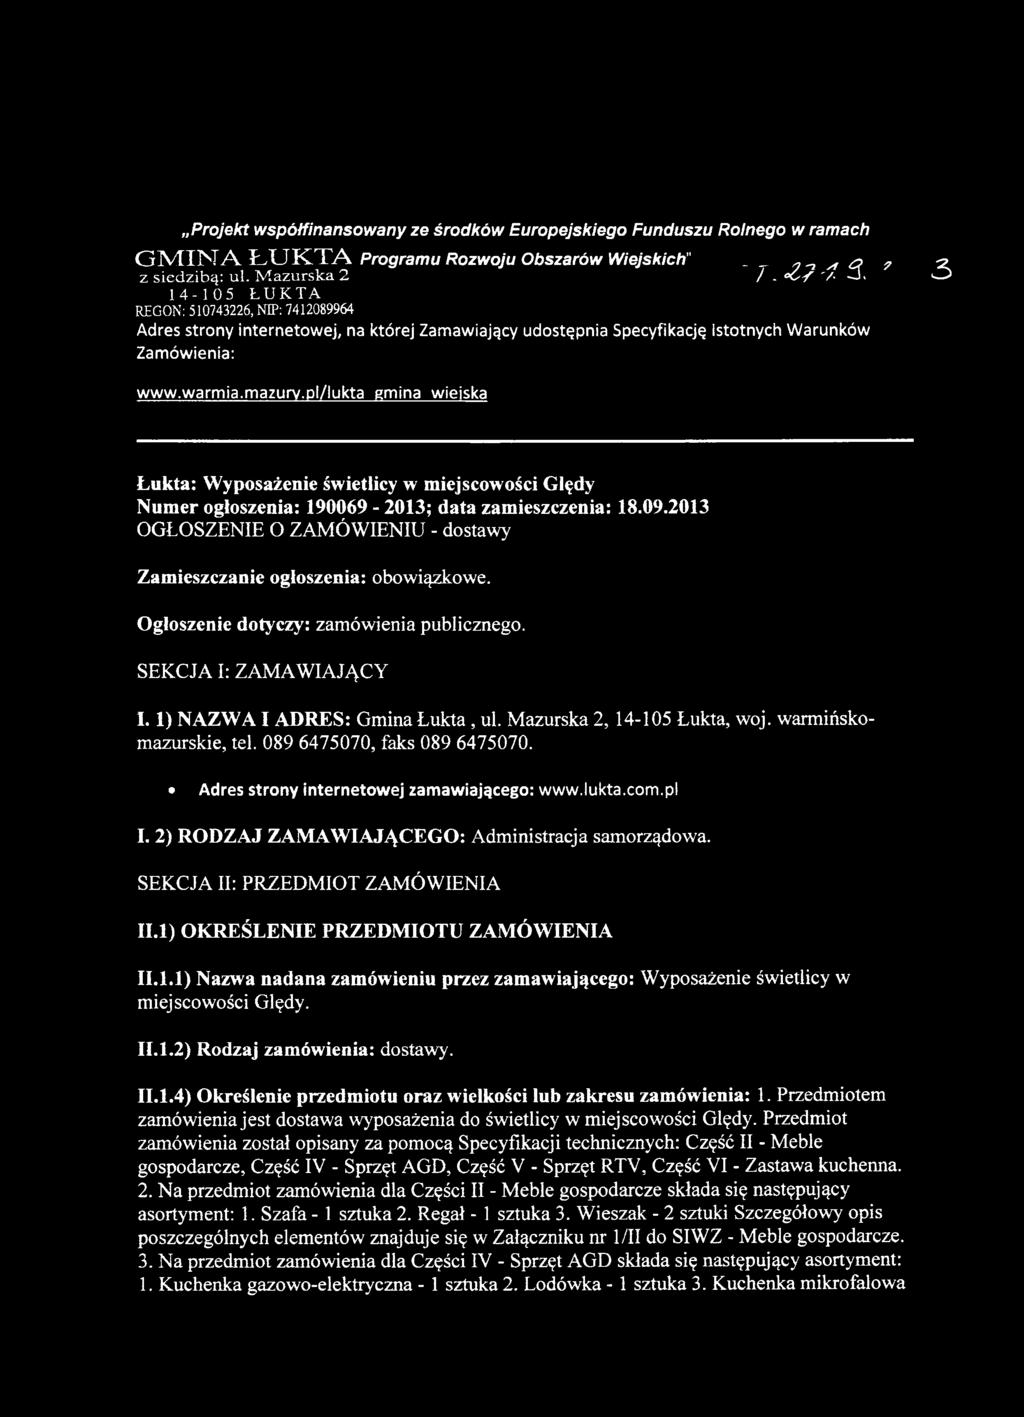 pl/lukta gmina wiejska Łukta: Wyposażenie świetlicy w miejscowości Ględy Numer ogłoszenia: 190069-2013; data zamieszczenia: 18.09.